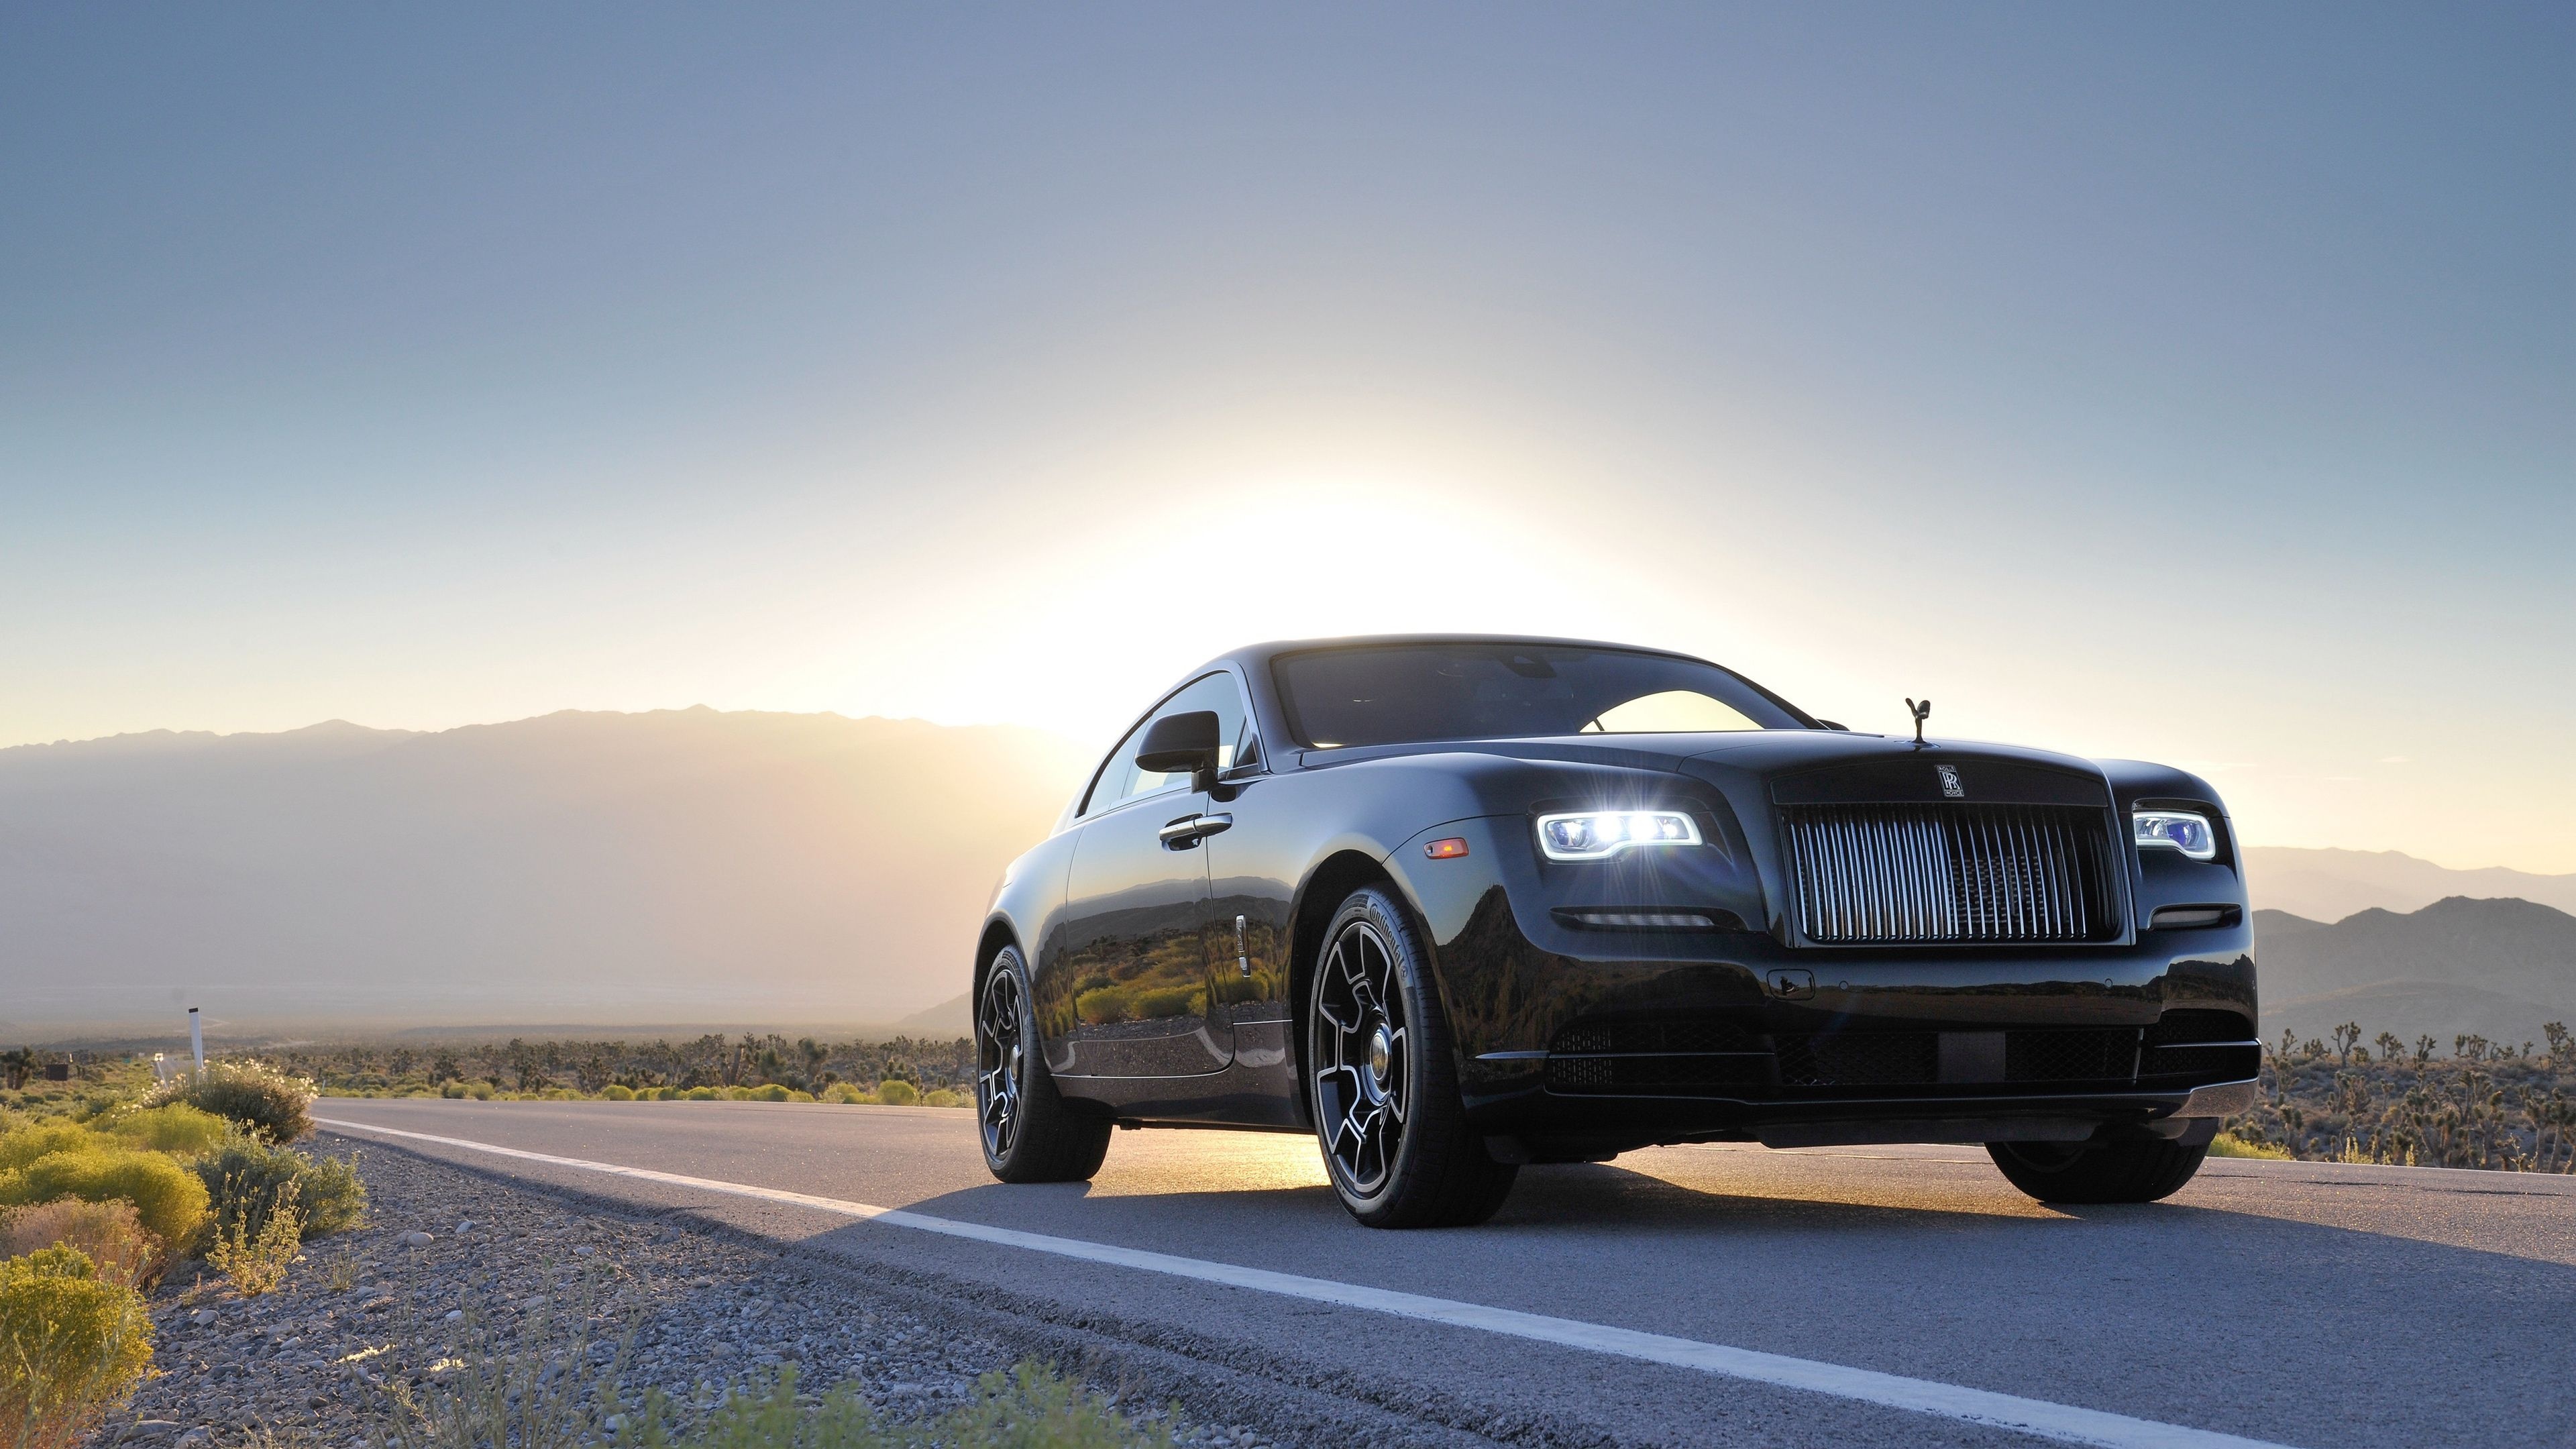 Rolls-Royce Wraith, Opulent car, Unmatched luxury, Exquisite details, 3840x2160 4K Desktop